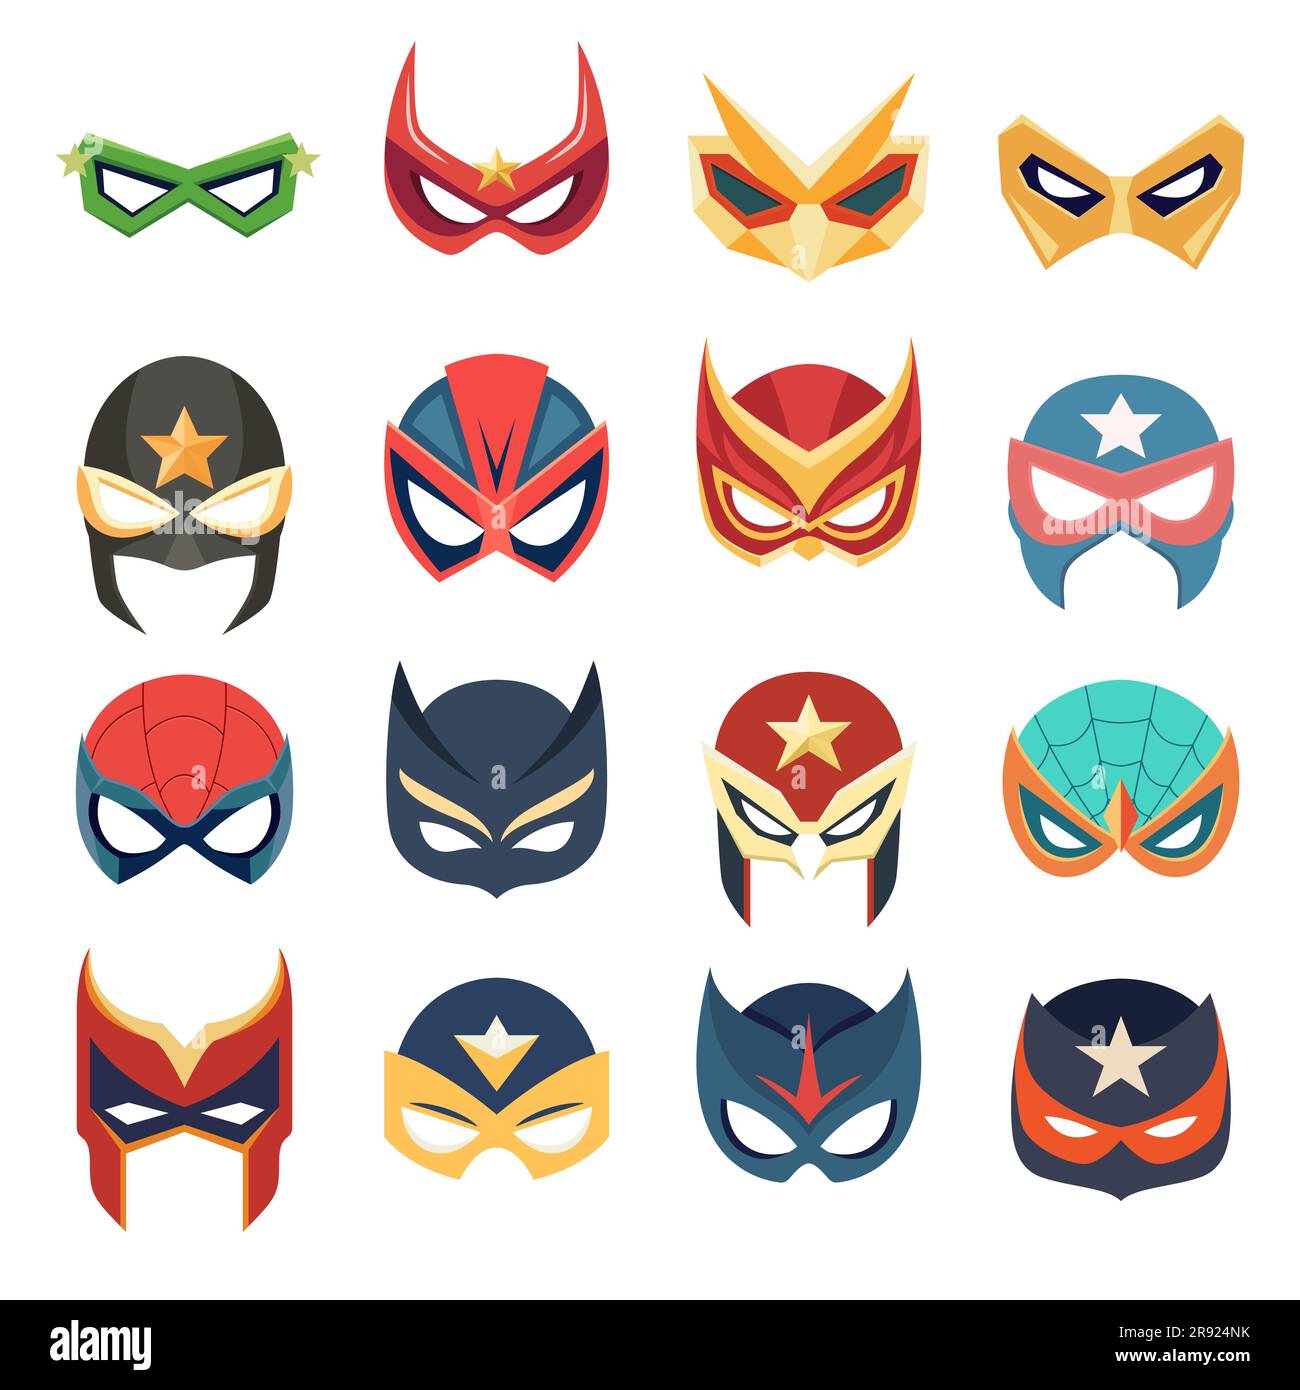 https://c8.alamy.com/compes/2r924nk/vector-super-hero-mascaras-set-en-estilo-plano-personaje-de-la-cara-superheroe-comic-book-mask-coleccion-accesorios-para-fotos-de-superheroes-mascaras-de-mujeres-y-hombres-carnaval-2r924nk.jpg